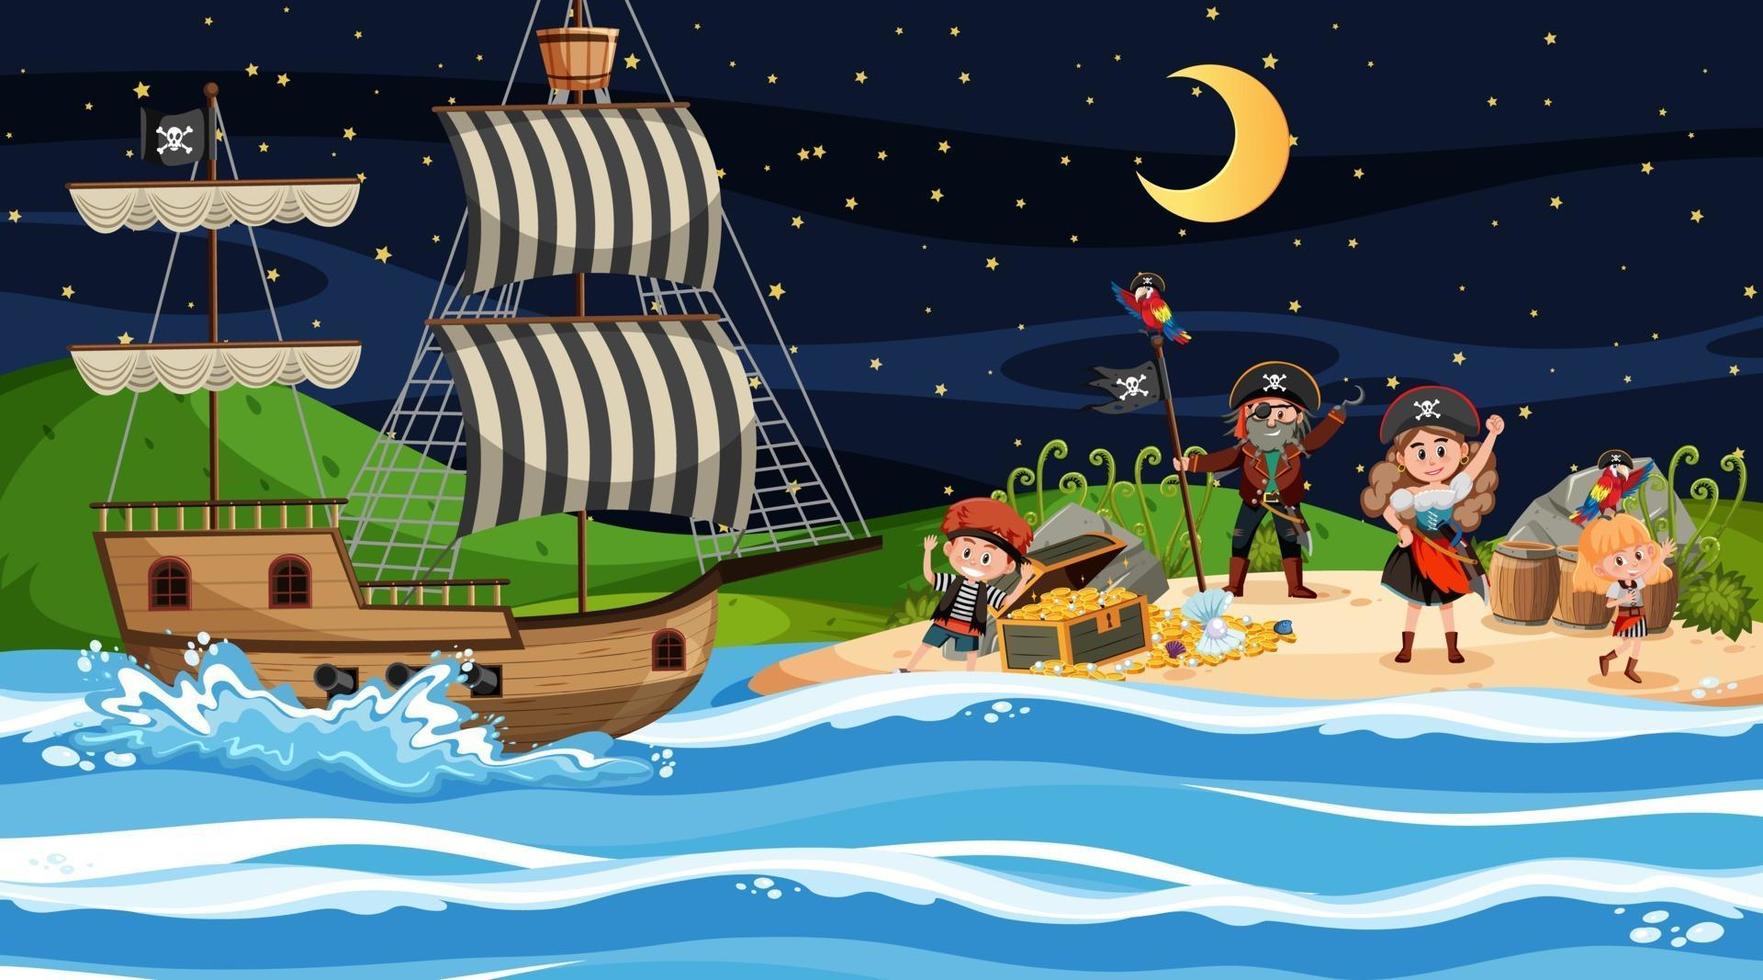 escena de la isla del tesoro en la noche con niños piratas vector